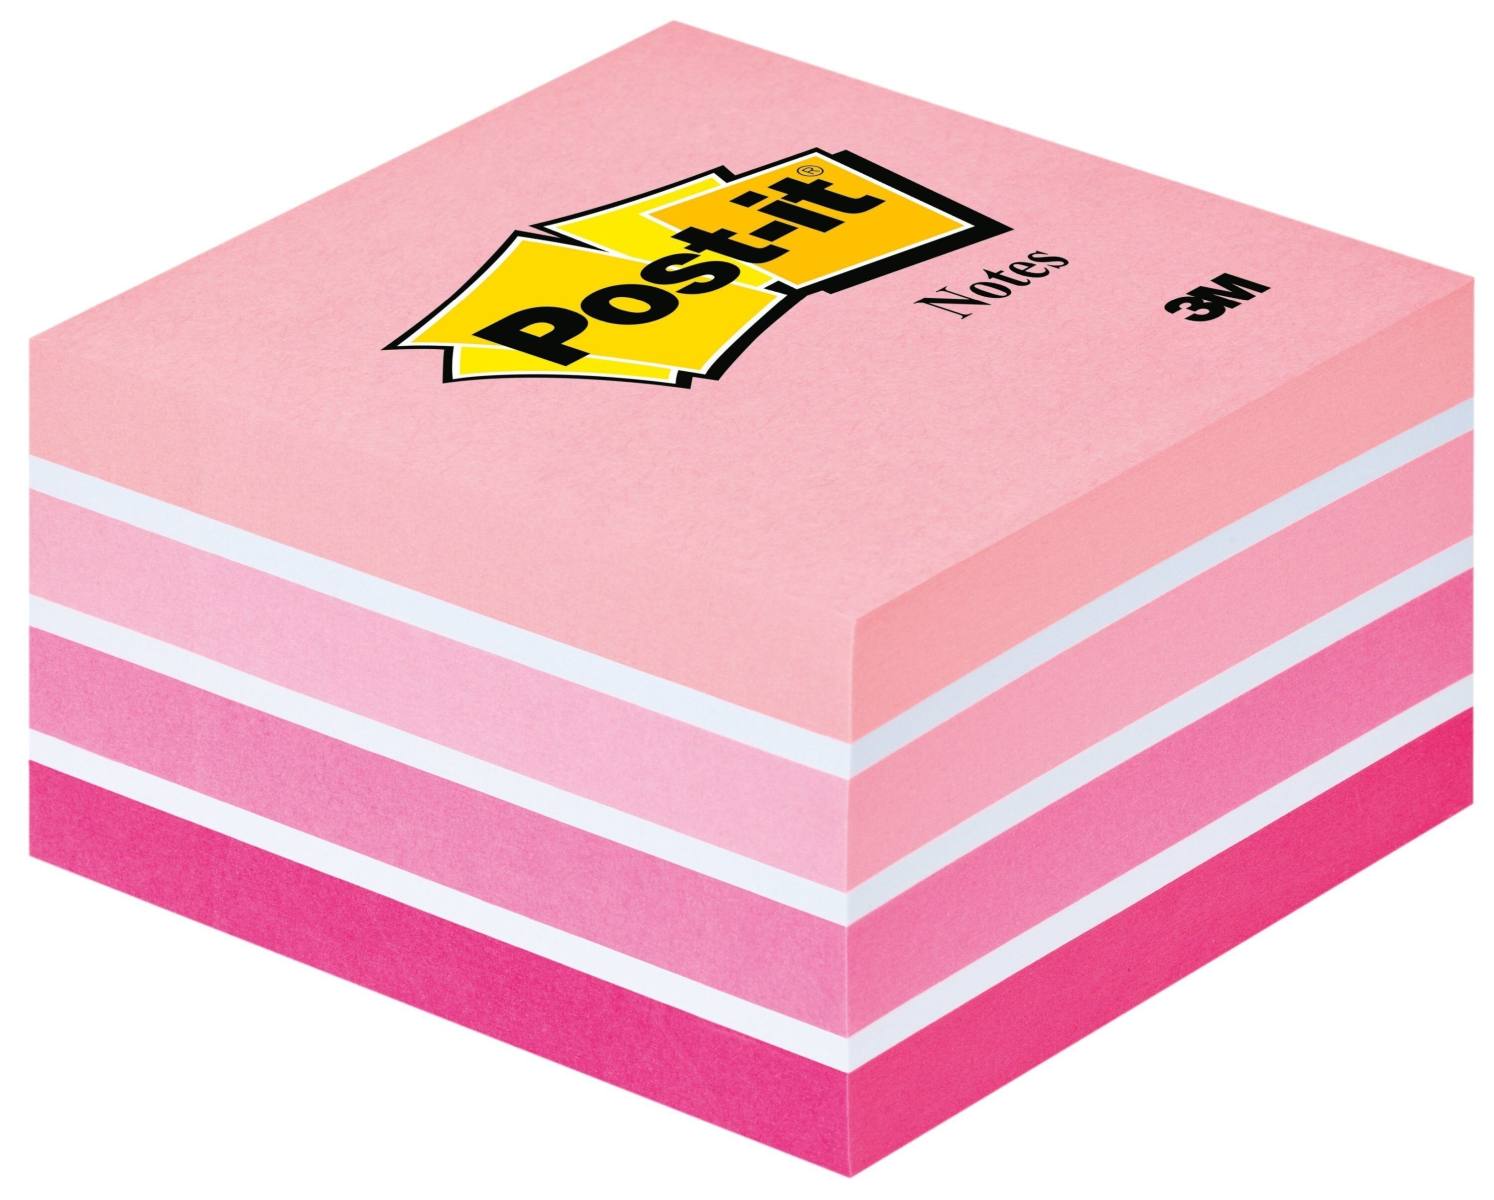 3M Post-it Cubo 2028P, 76 mm x 76 mm, colores rosa pastel, 1 cubo de 450 hojas